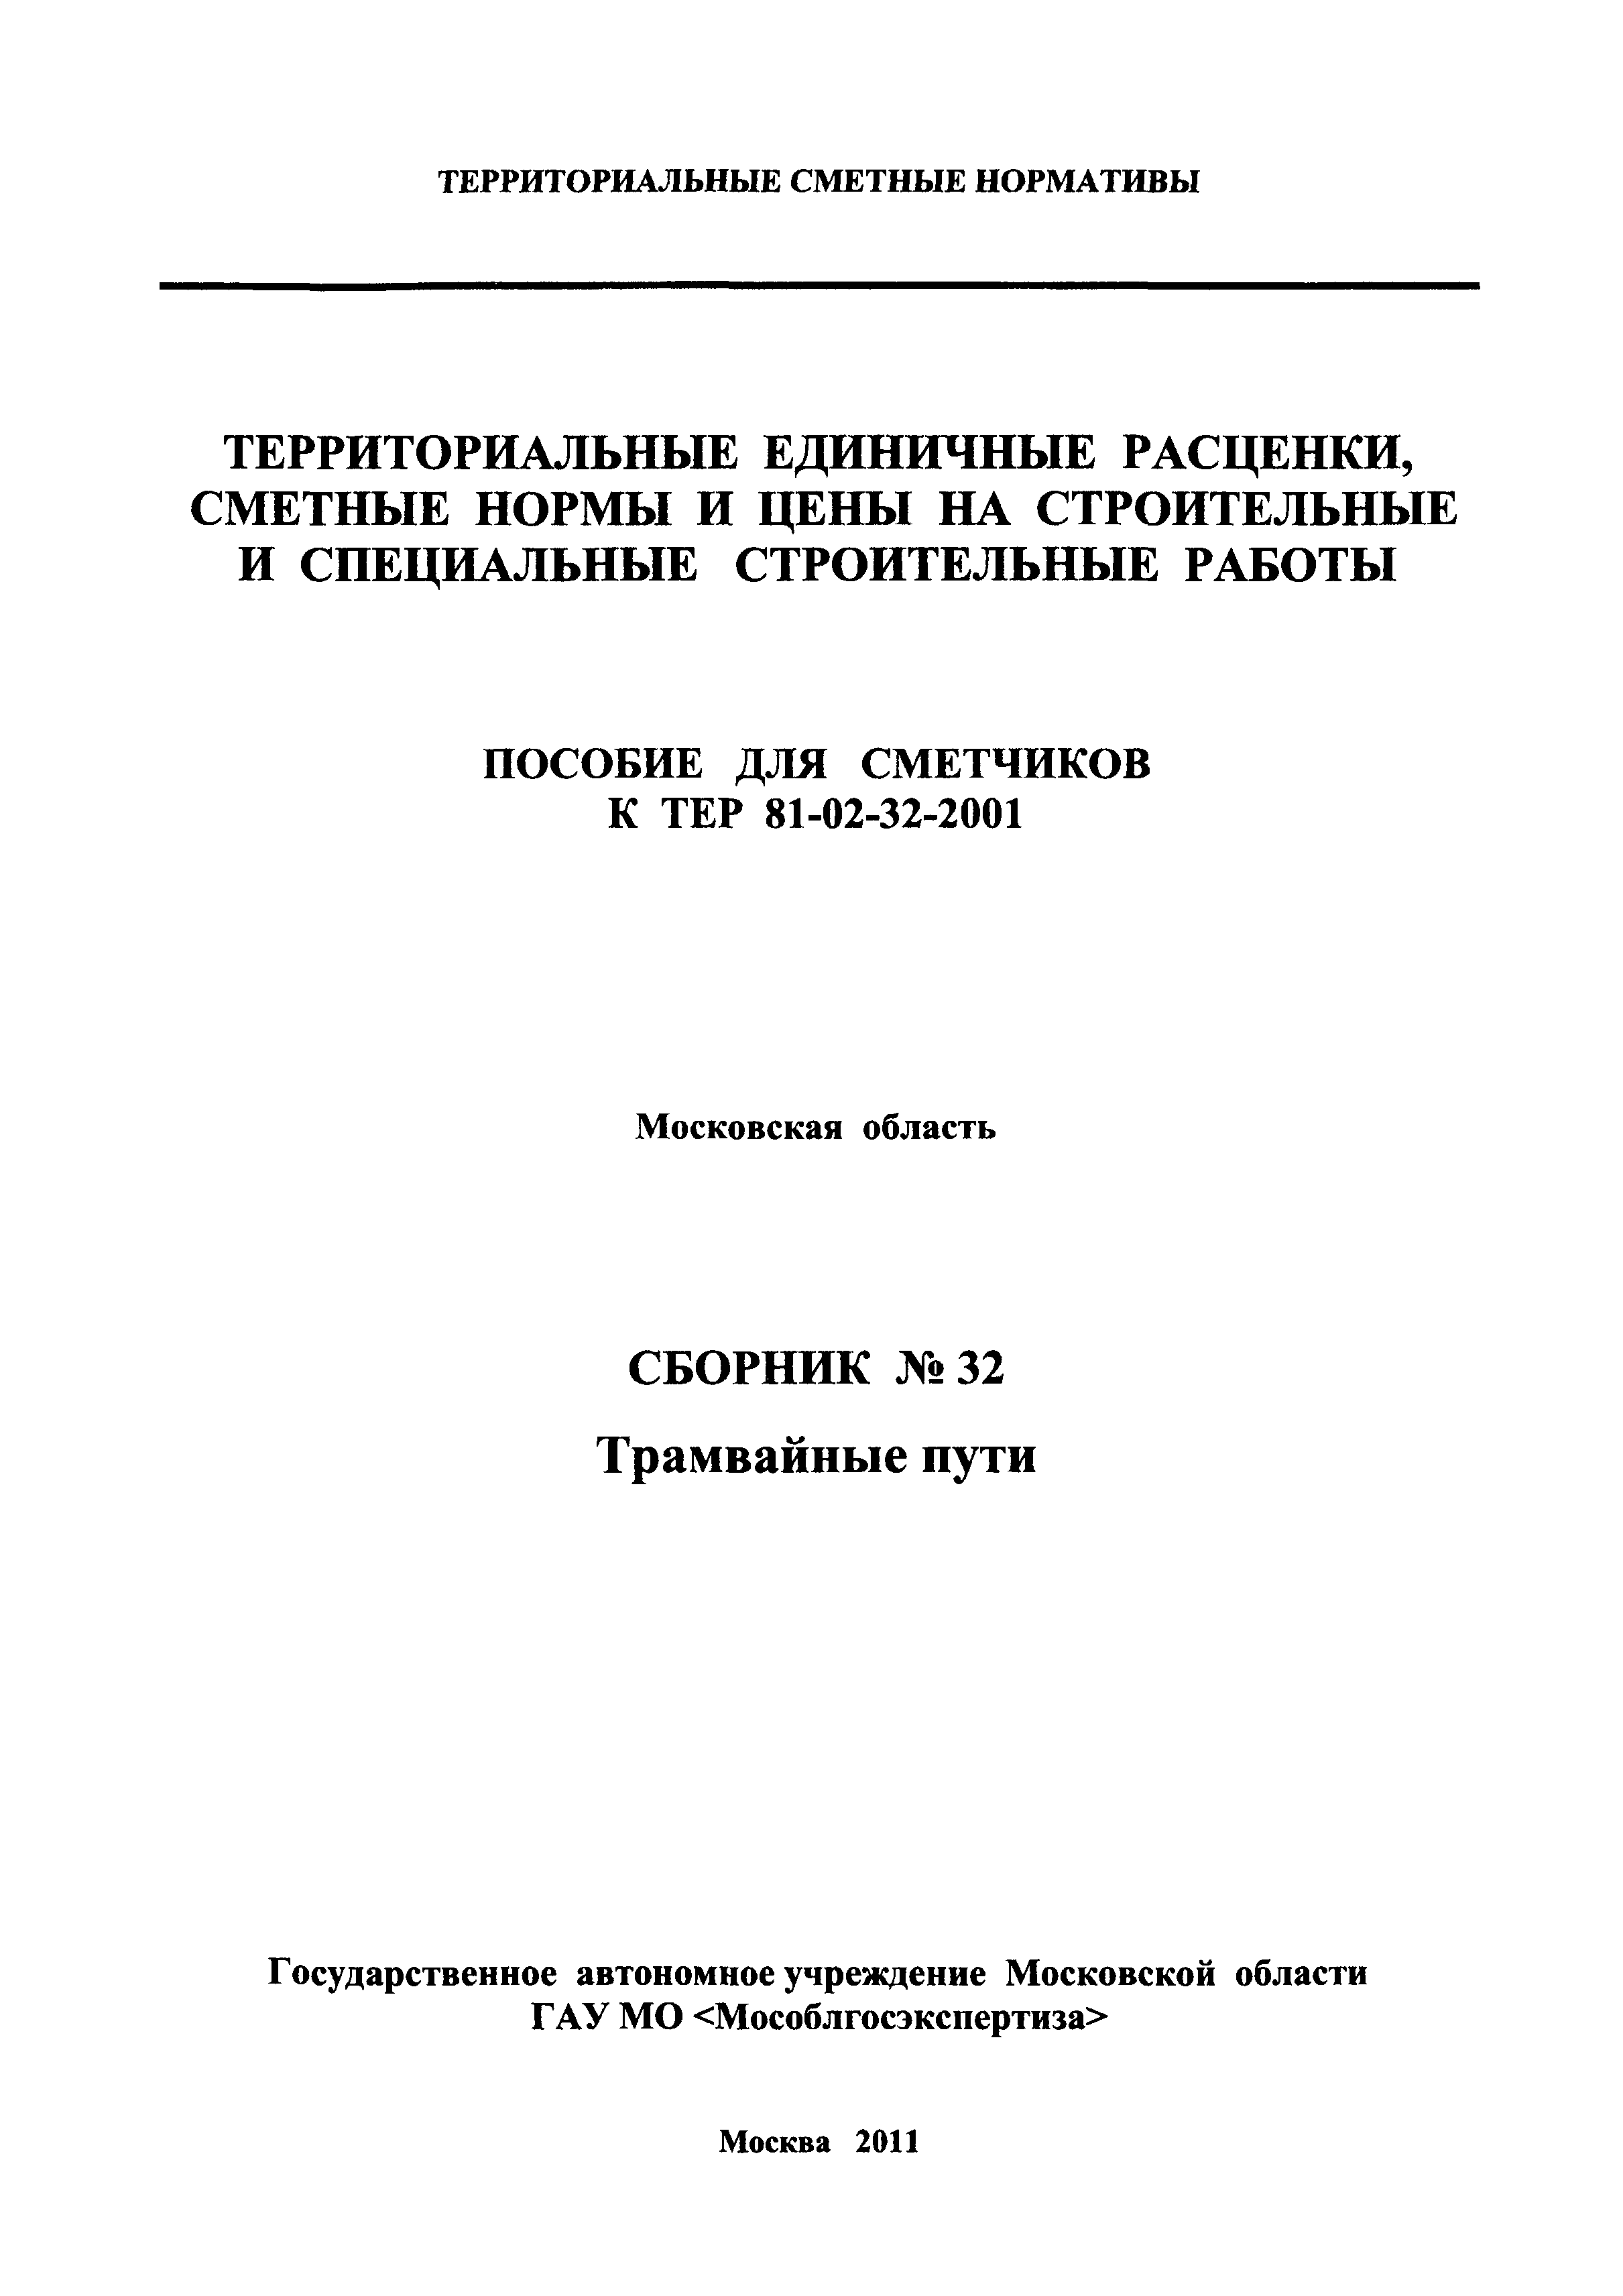 ГЭСНПиТЕР 2001-32 Московской области